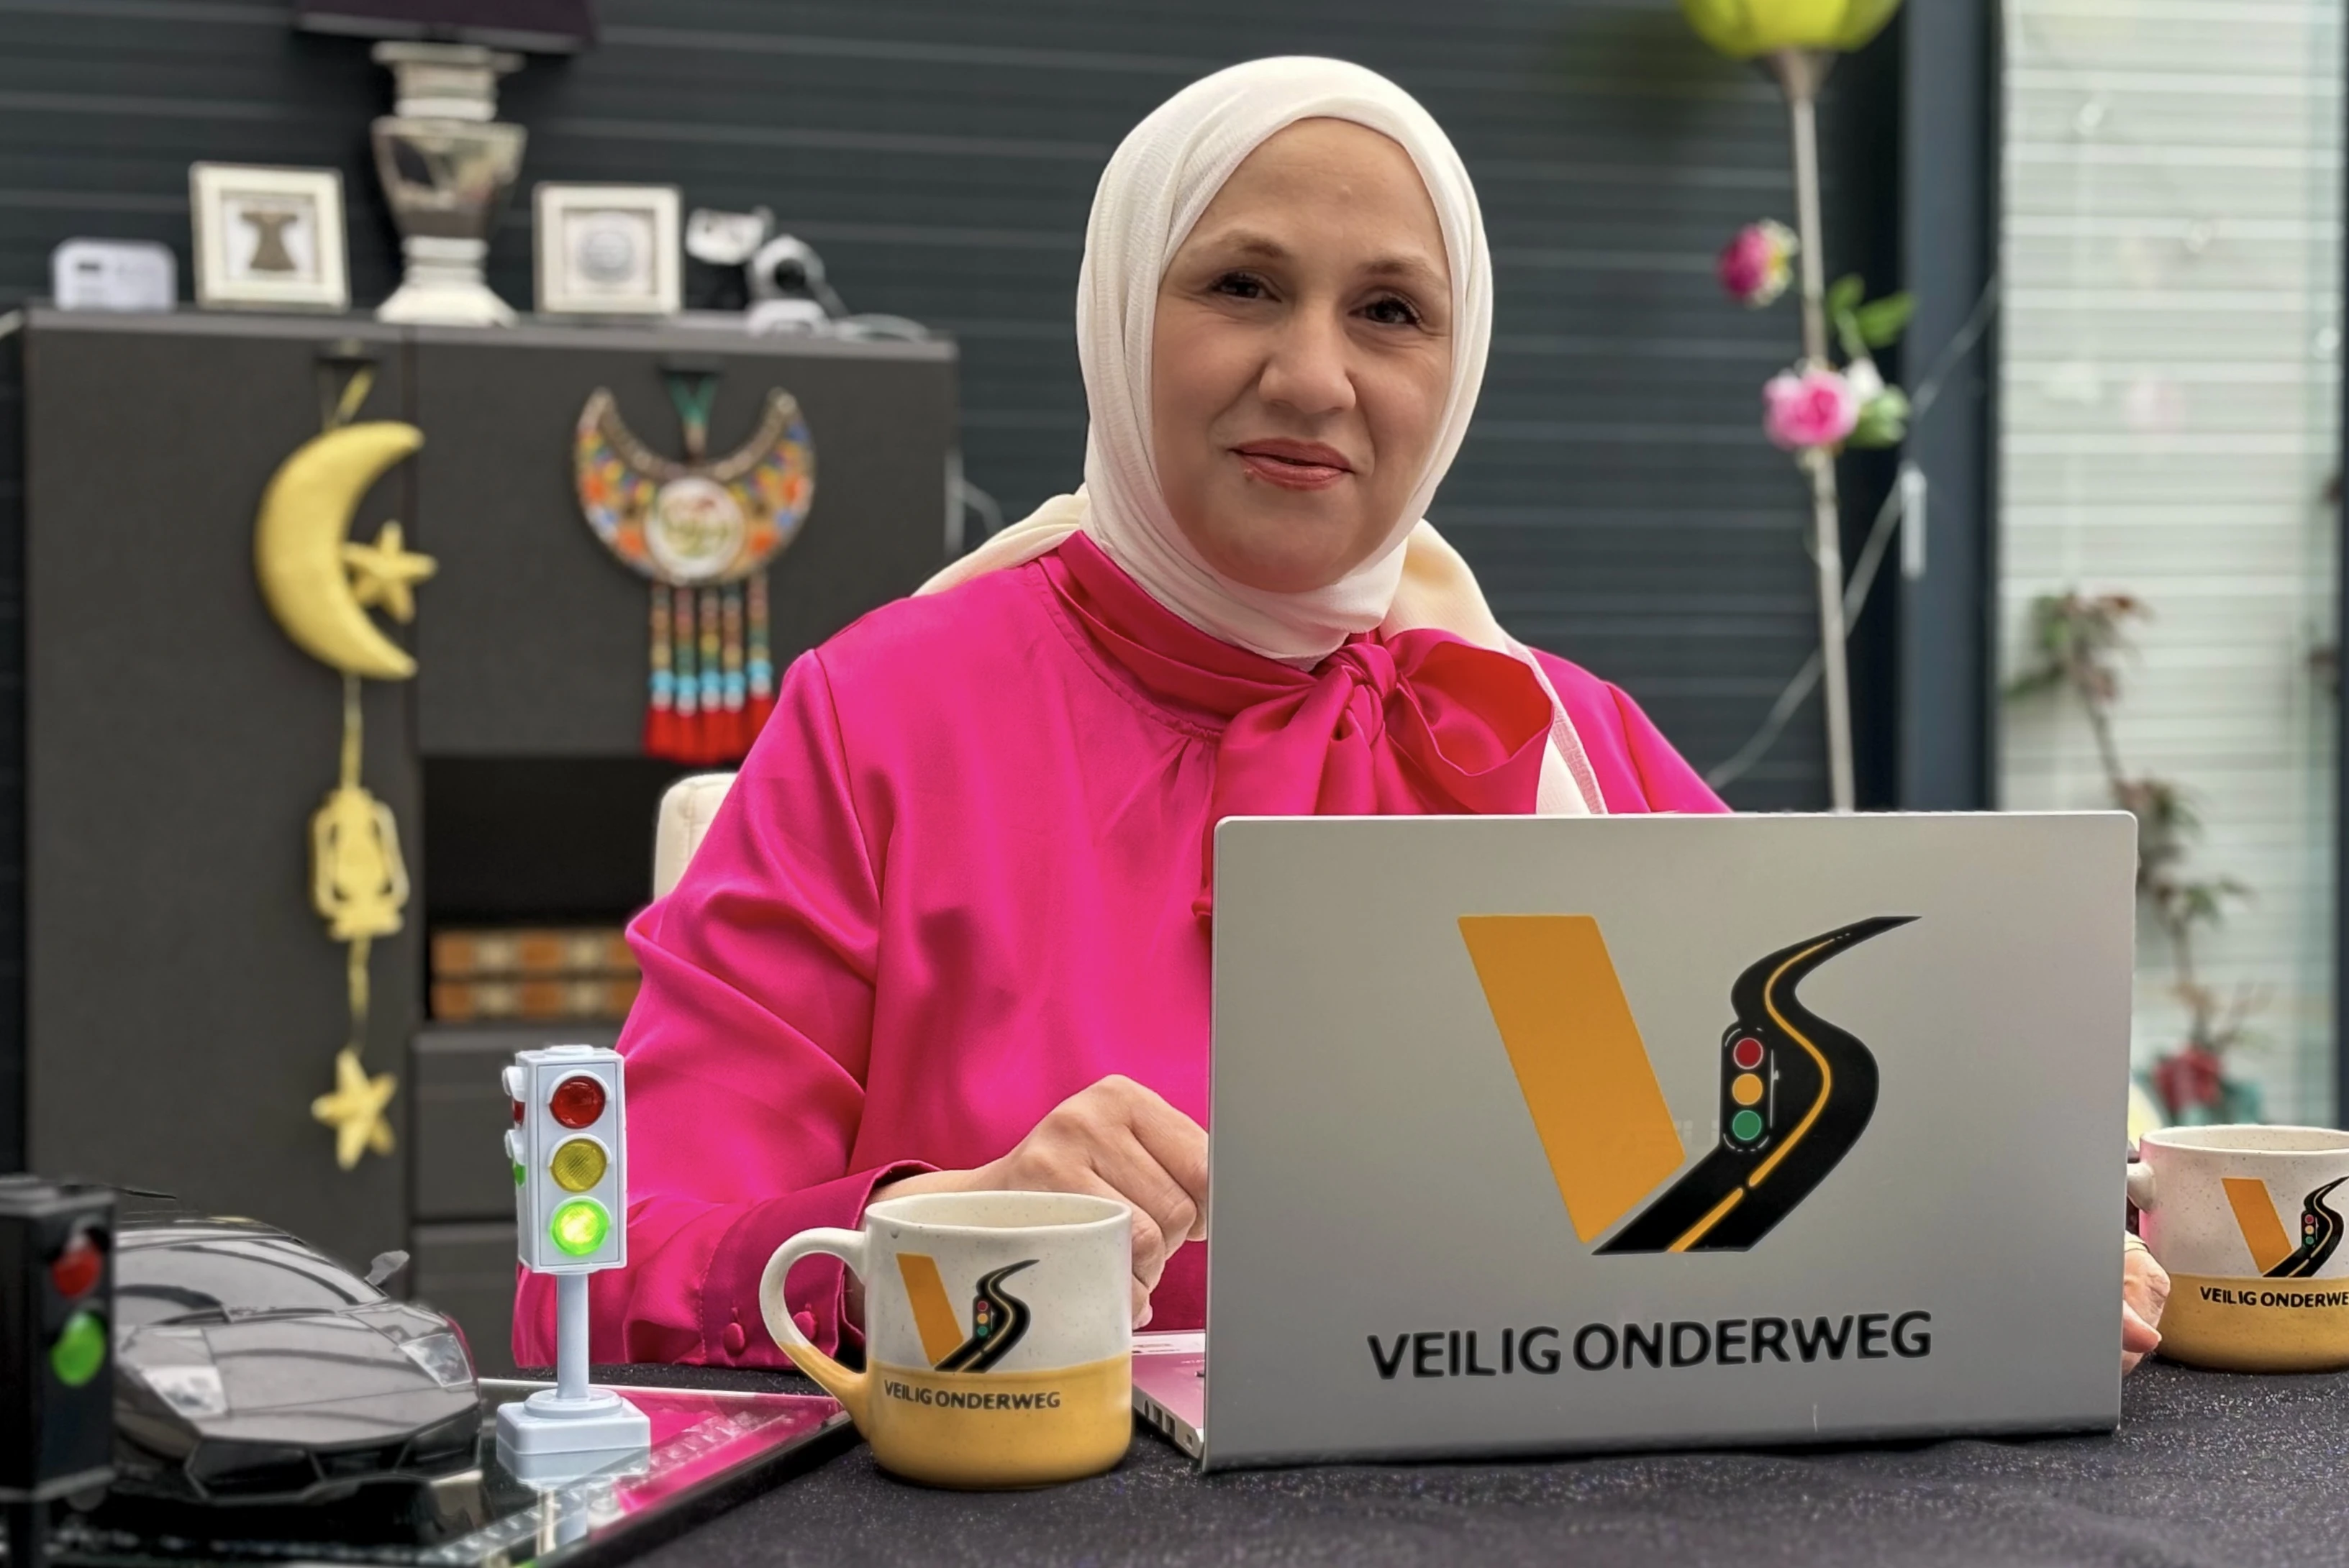 Loubna Bazarbashi qui donne des cours théoriques de conduite avec son entreprise « Veilig Onderweg ». Loubna est assise derrière son ordinateur portable.